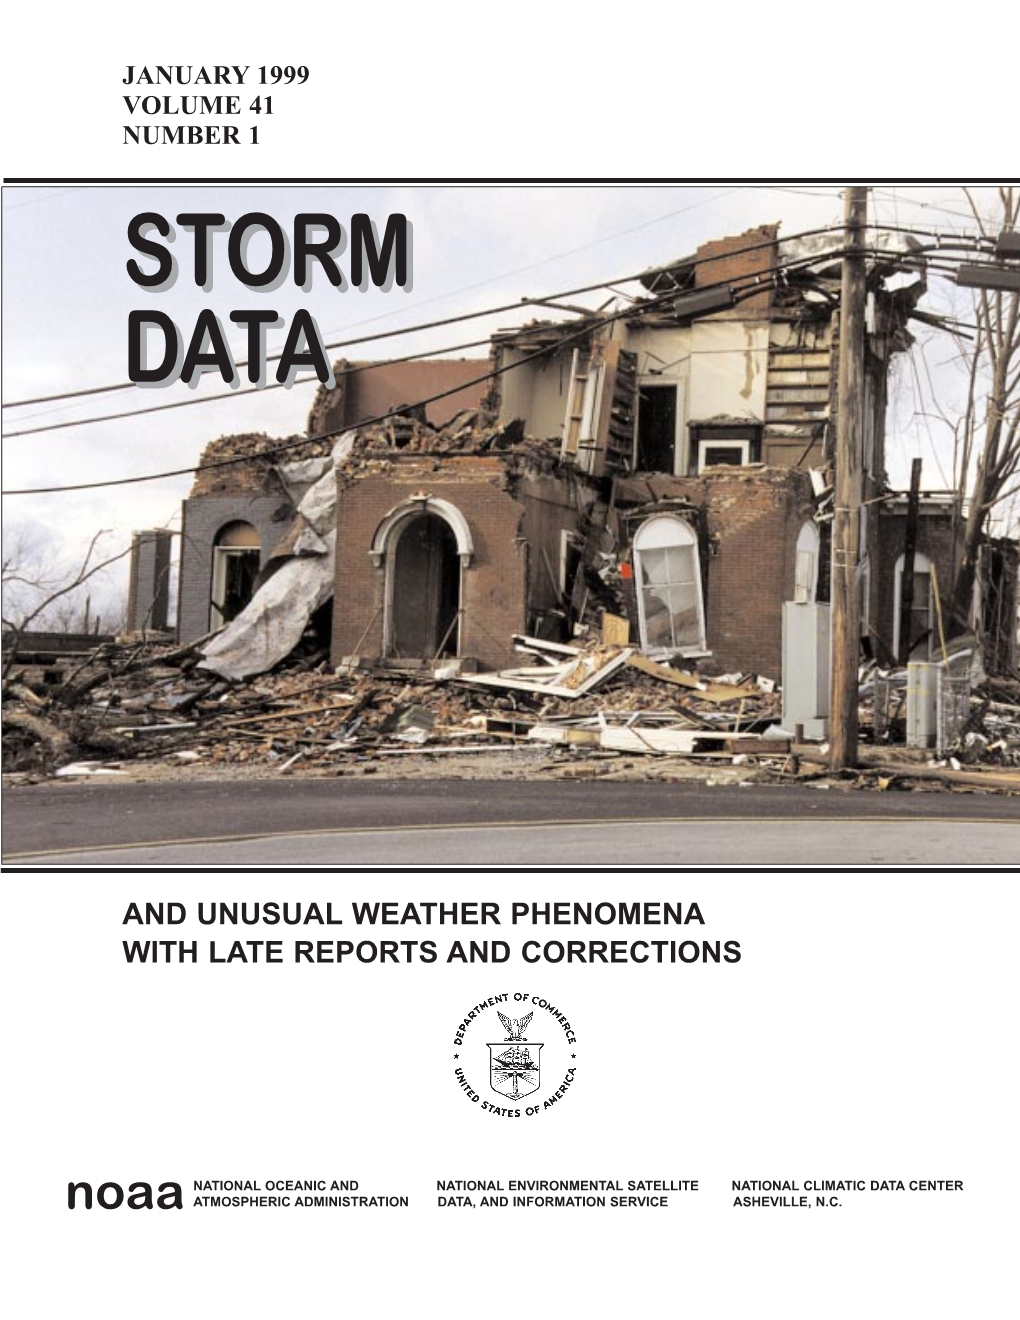 January 1999 Storm Data